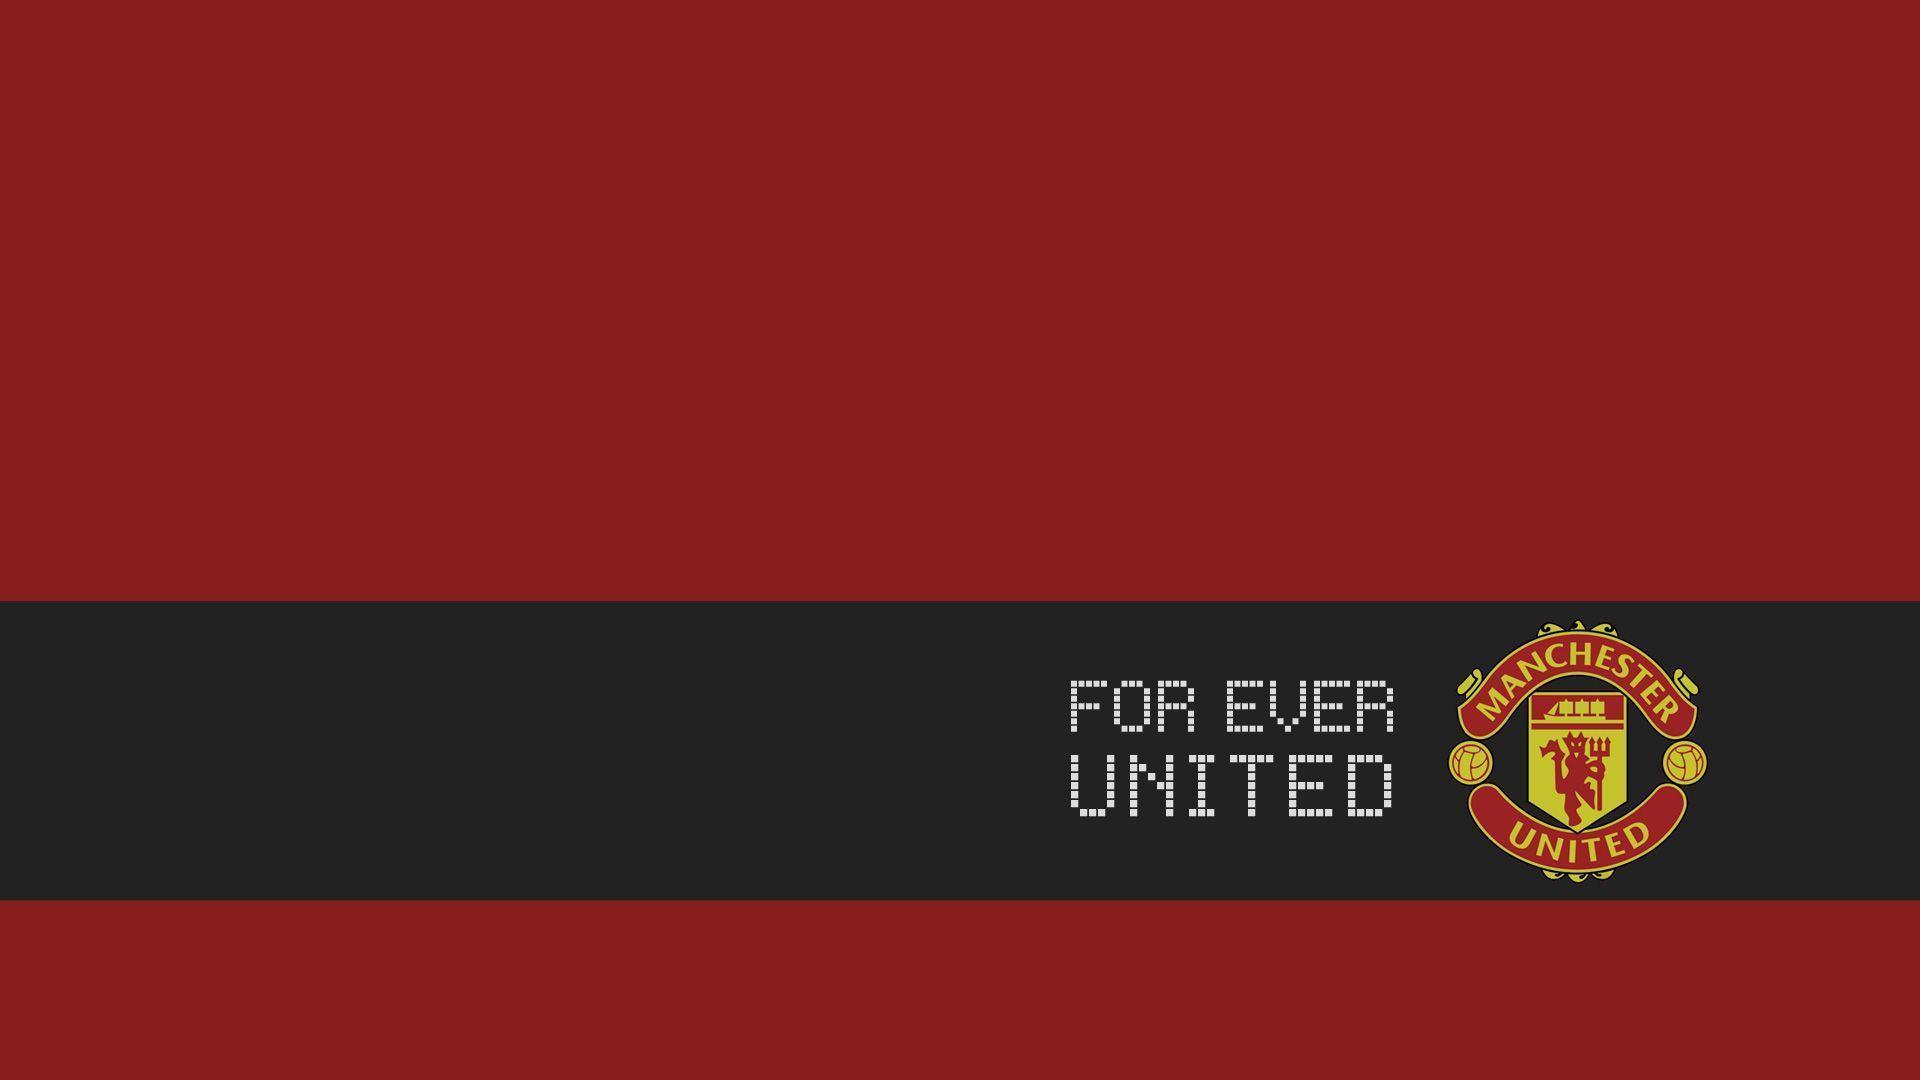 Bộ sưu tập 50 Hình nền máy tính đẹp nhất 2018 31  Manchester united  wallpaper Manchester united logo Manchester united